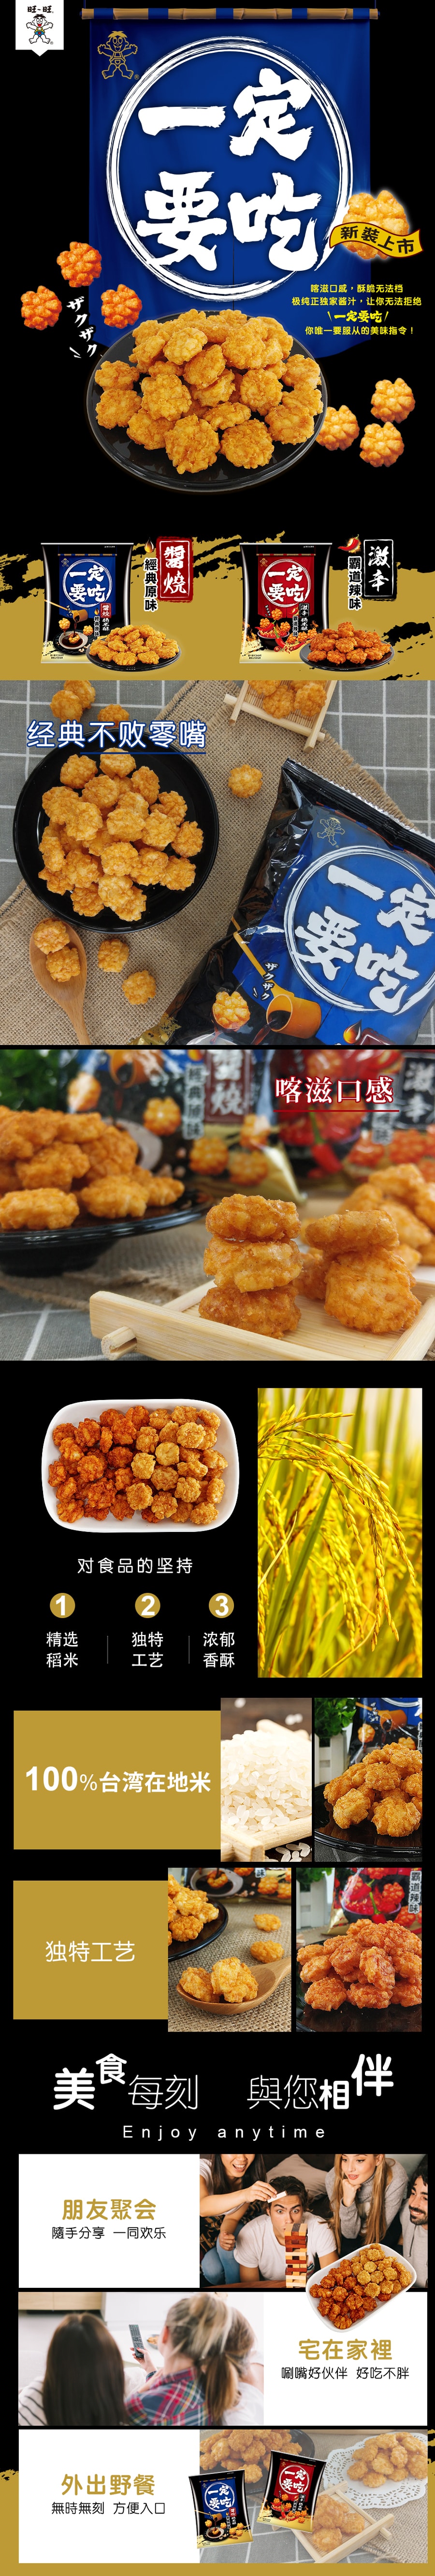 Taiwan Must Eat Series Original【Vegan】 Flavor Rice Cracker56g*5 Packs 280g